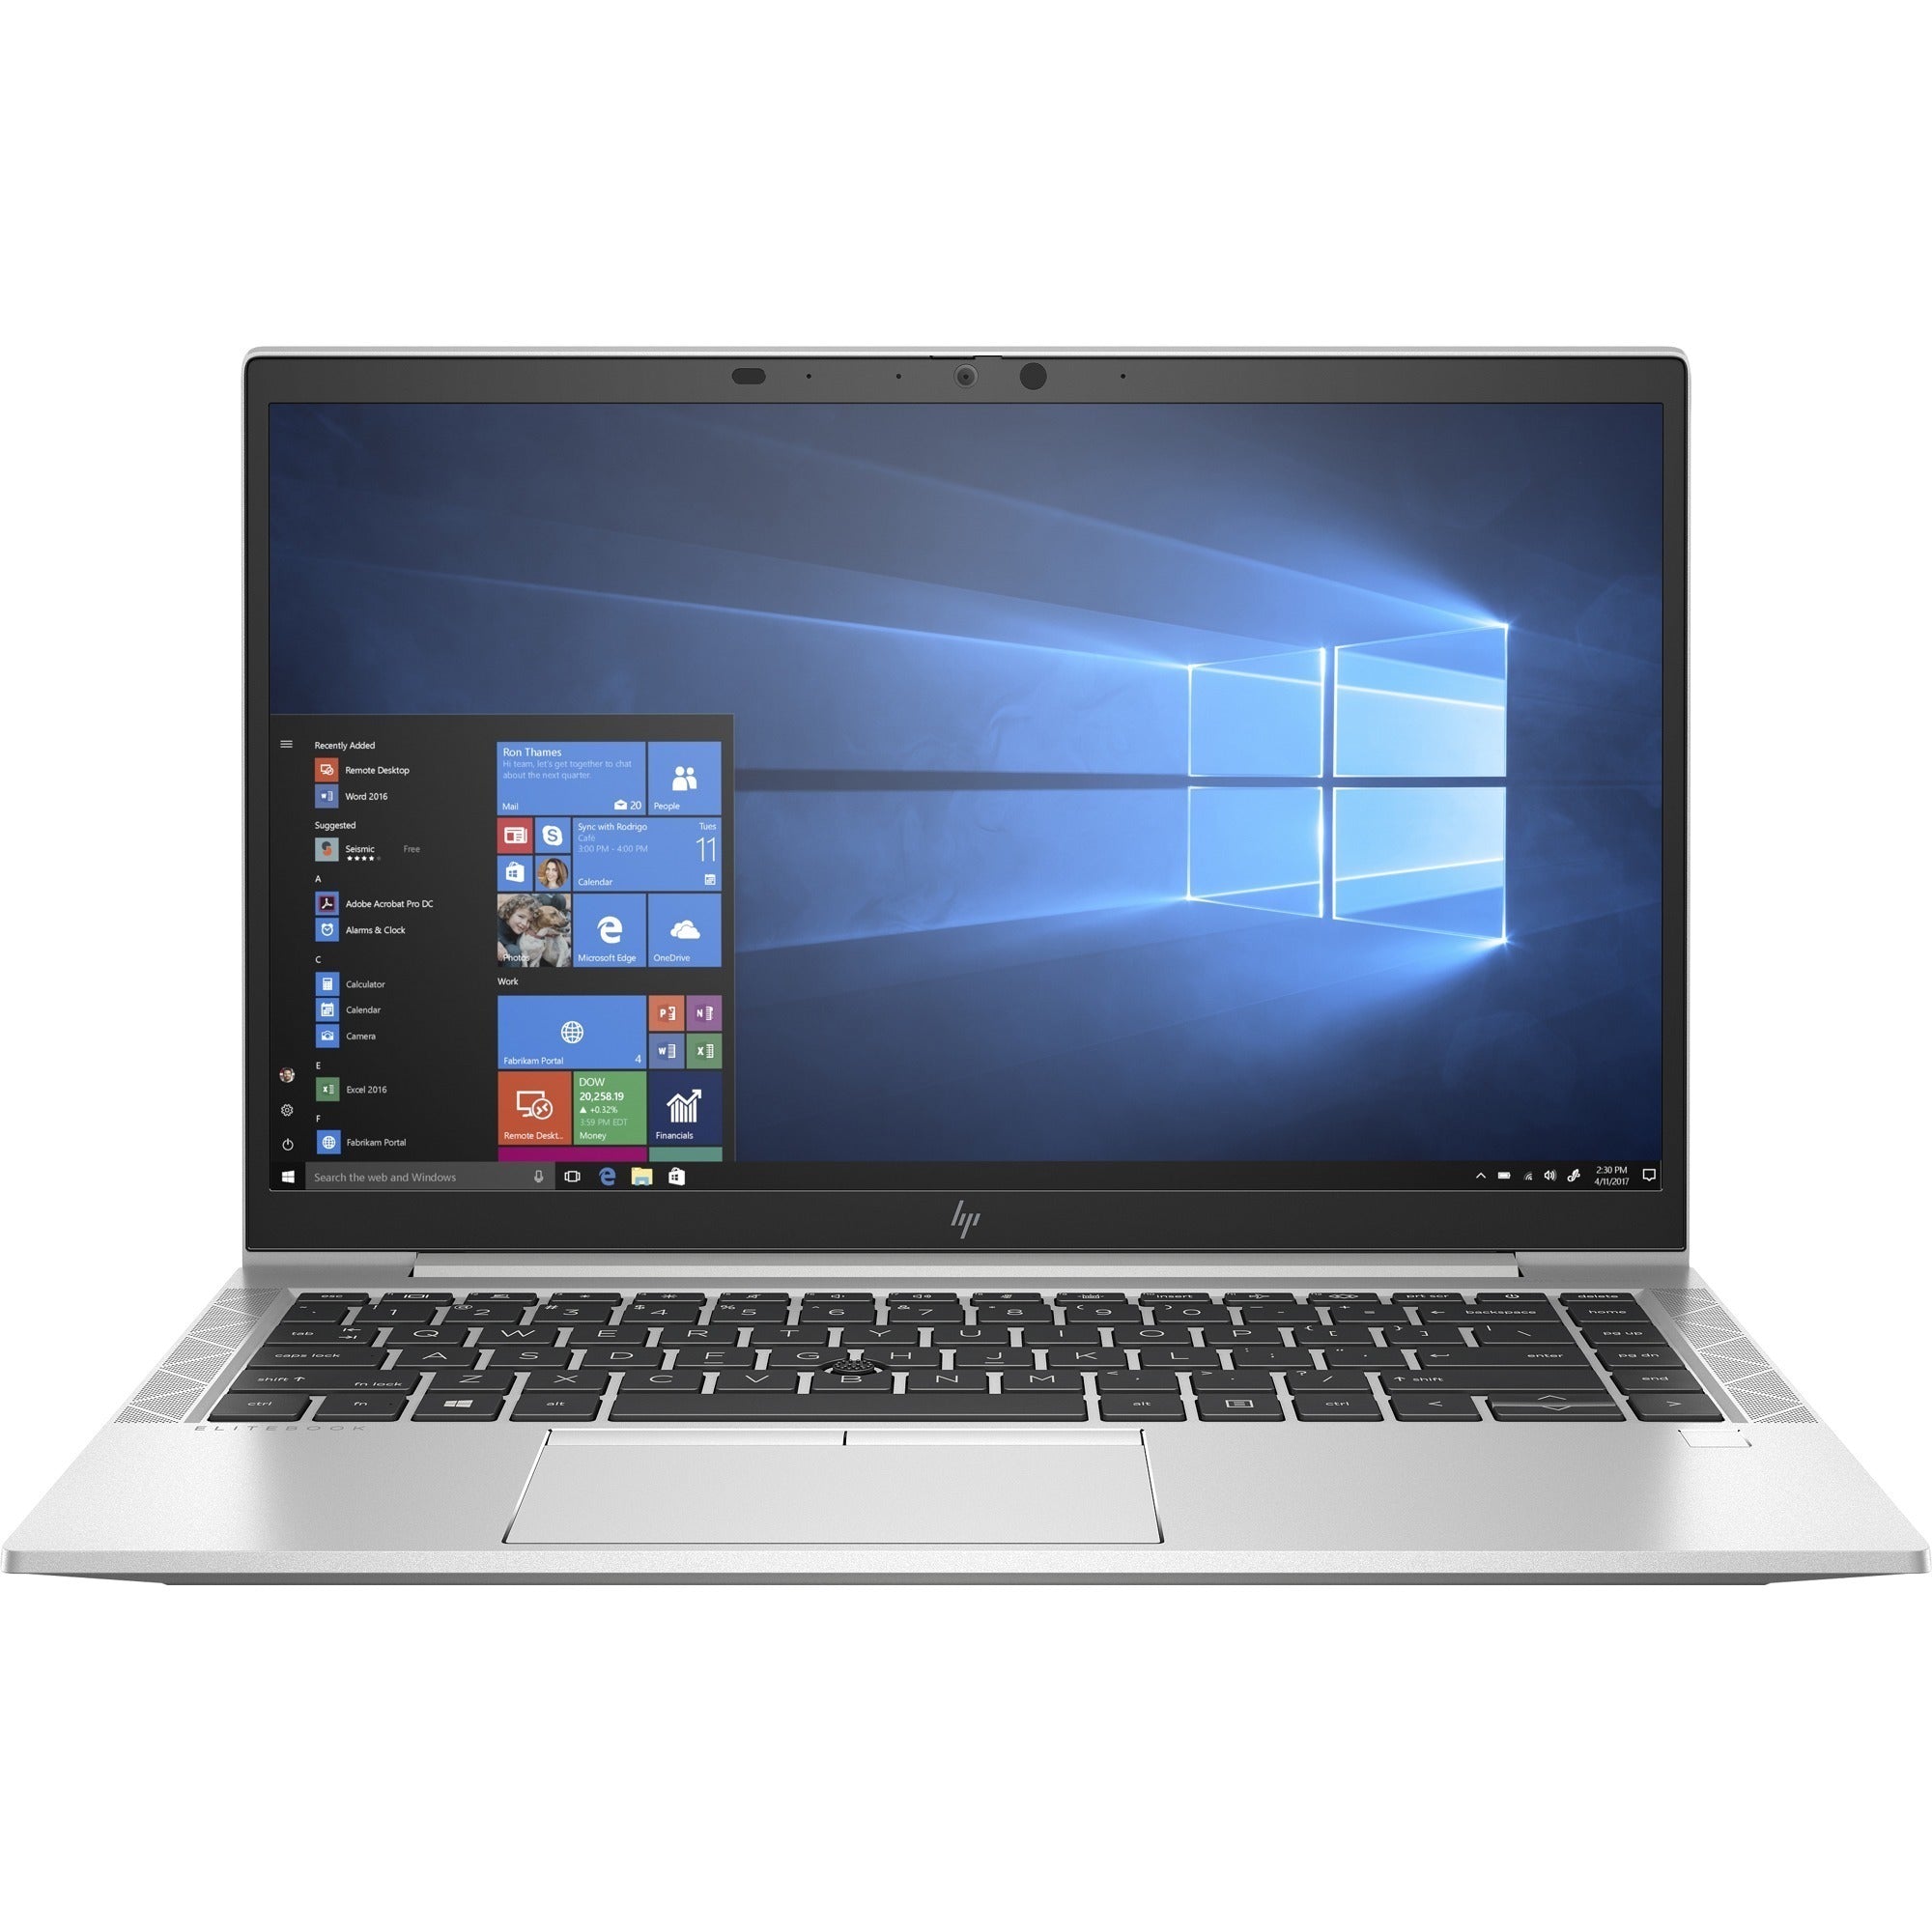 HP EliteBook 845 G7 14" Notebook - Full HD - 1920 x 1080 - AMD Ryzen 5 PRO 4650U Hexa-core (6 Core) 2.10 GHz - 8 GB RAM - 256 GB SSD